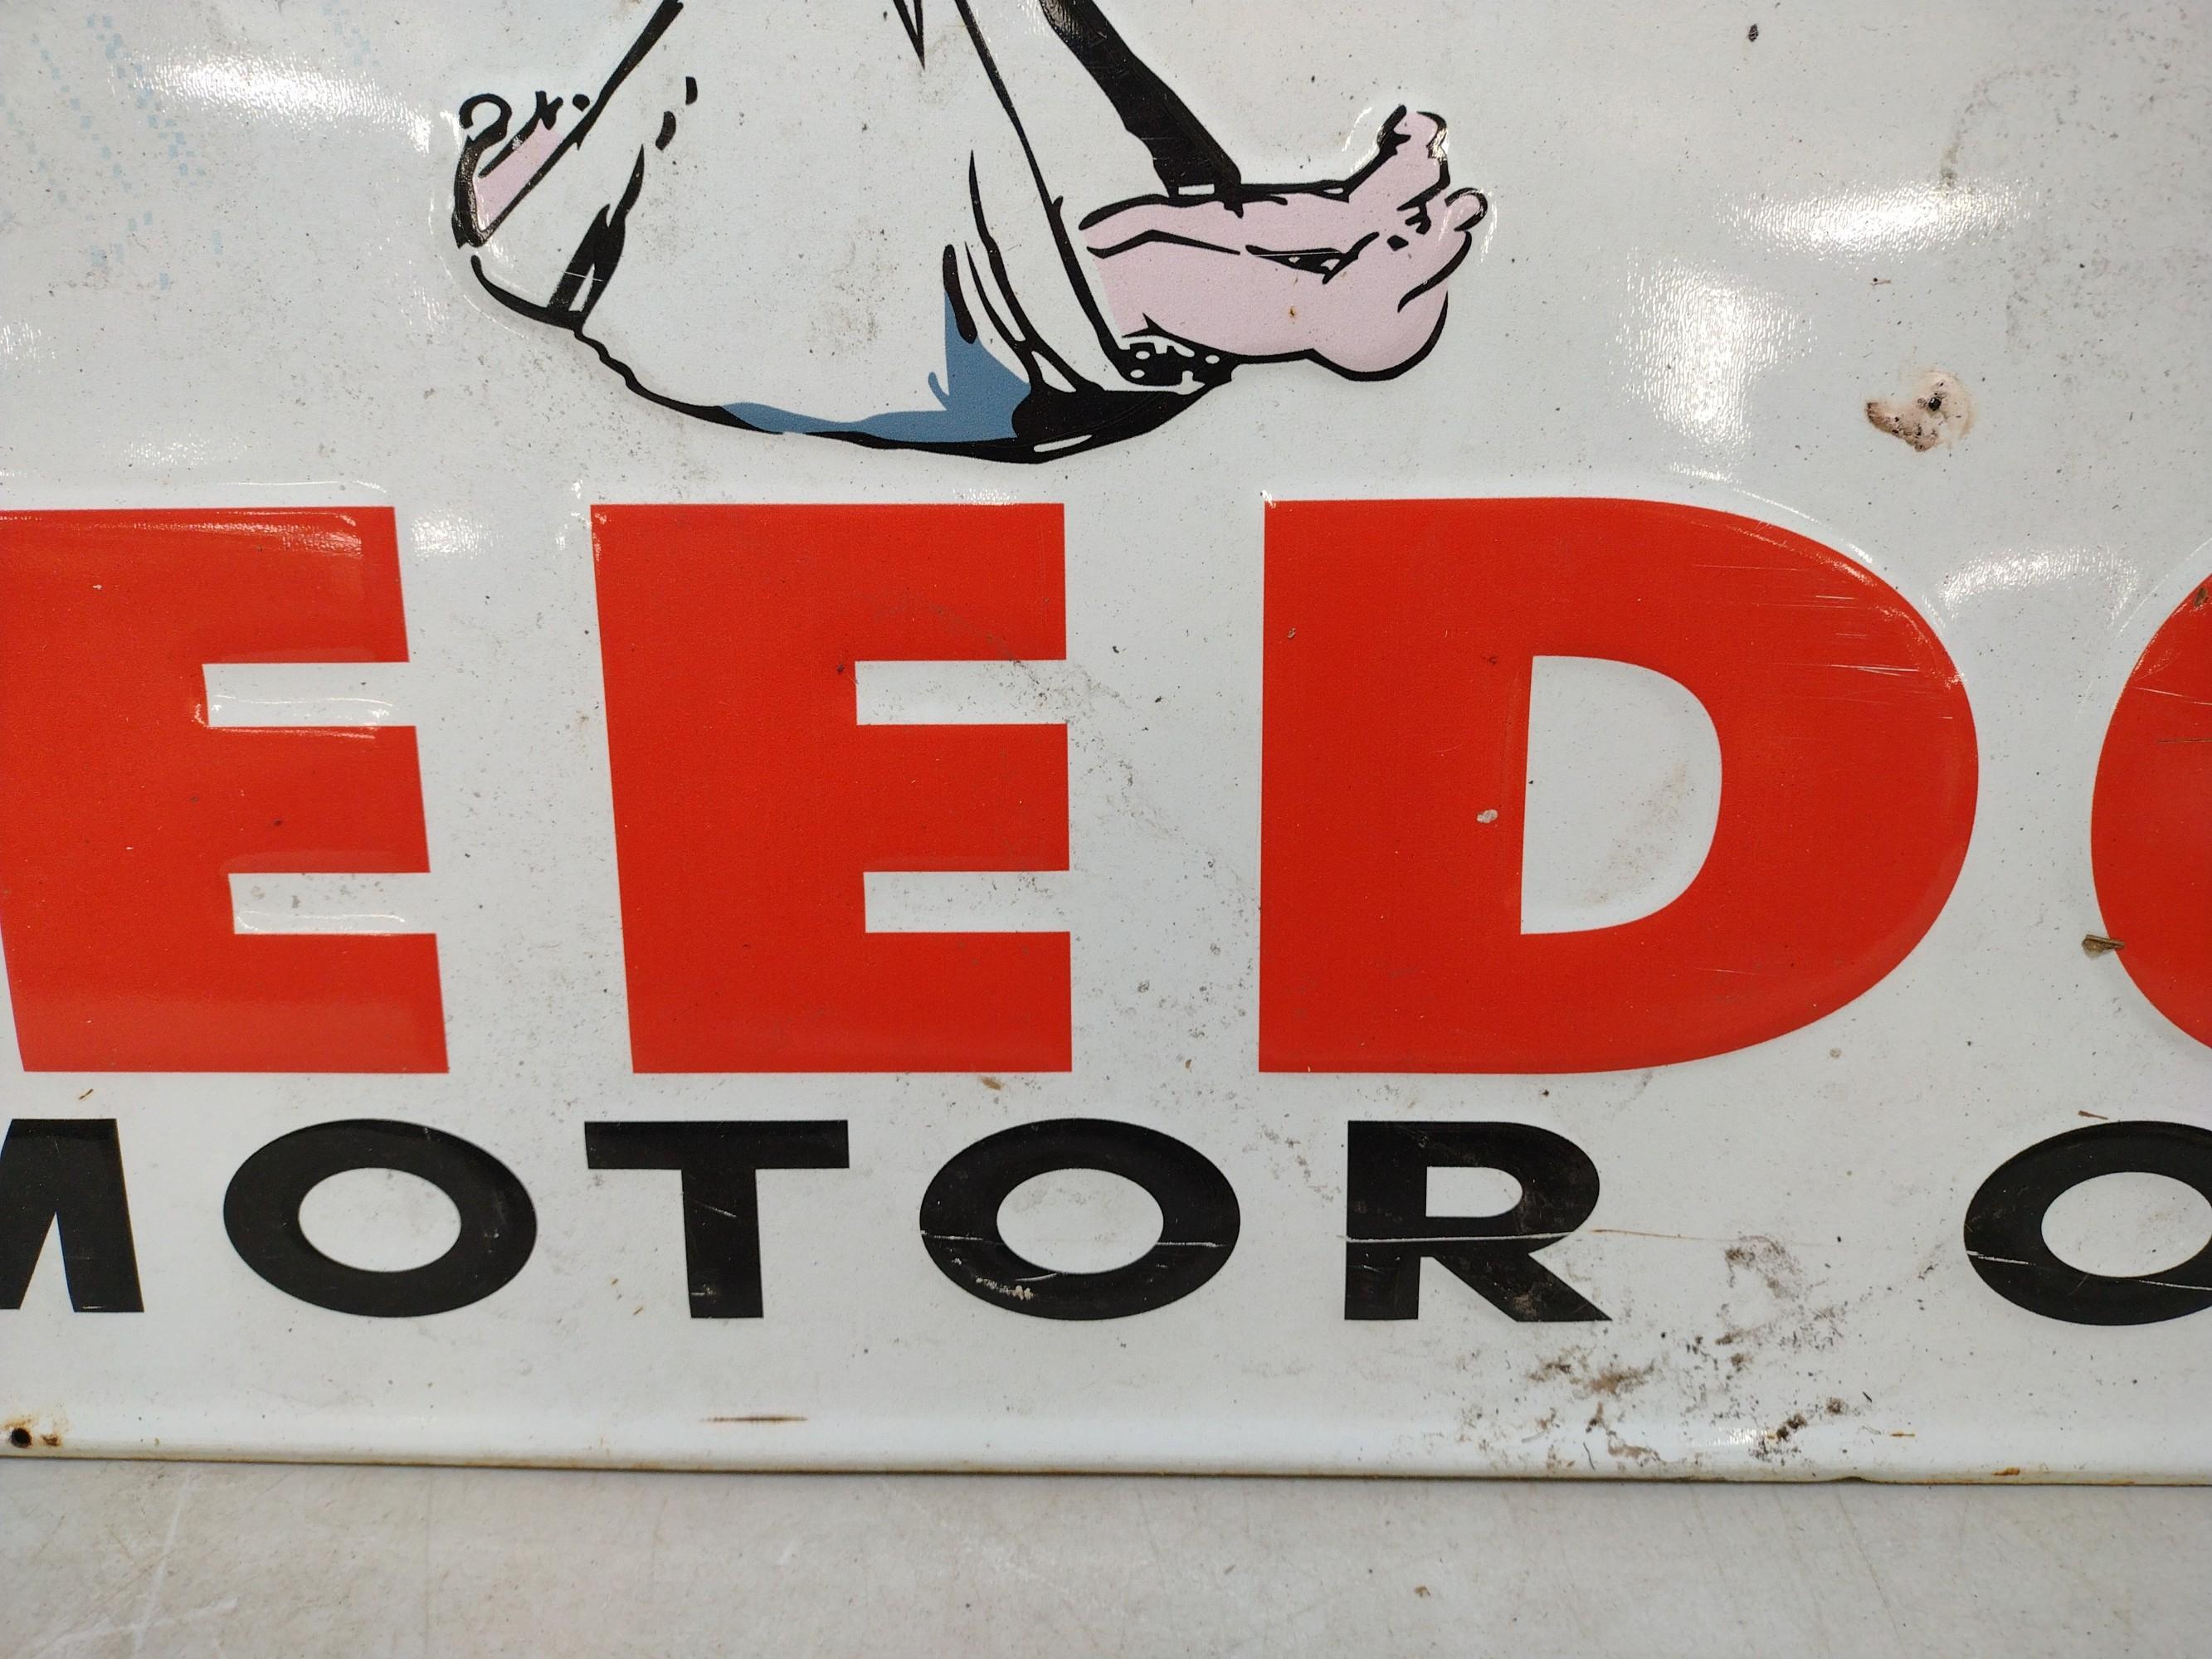 Vintage SSM Veedol Motor Oil Advertising Sign.